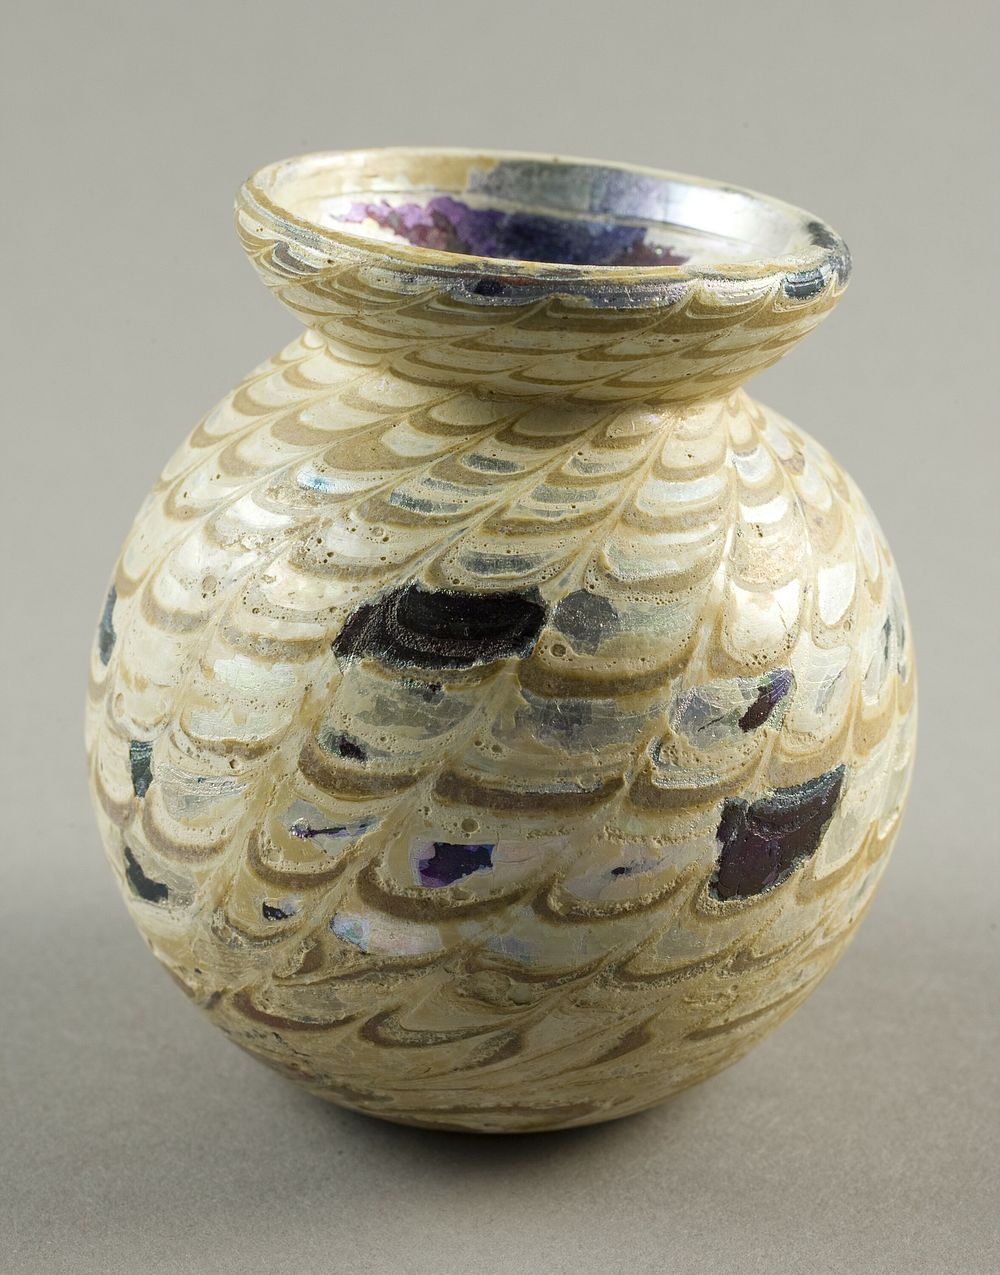 Jar by Islamic